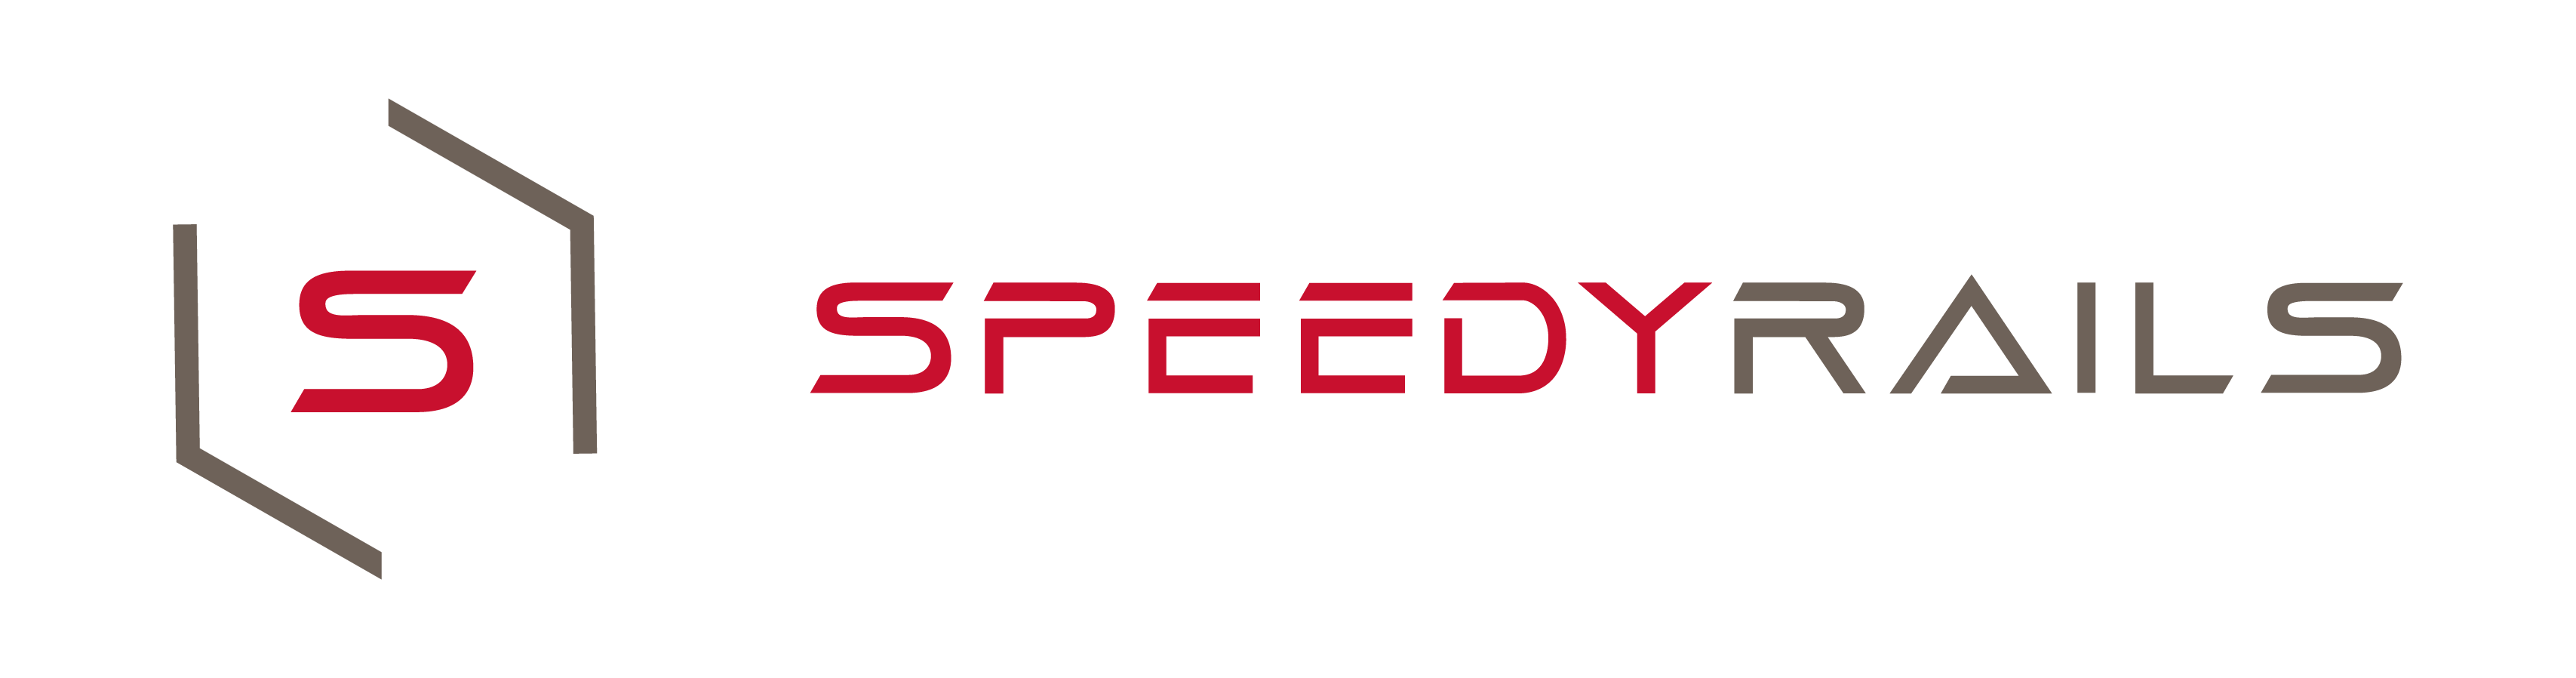 Speedyrails